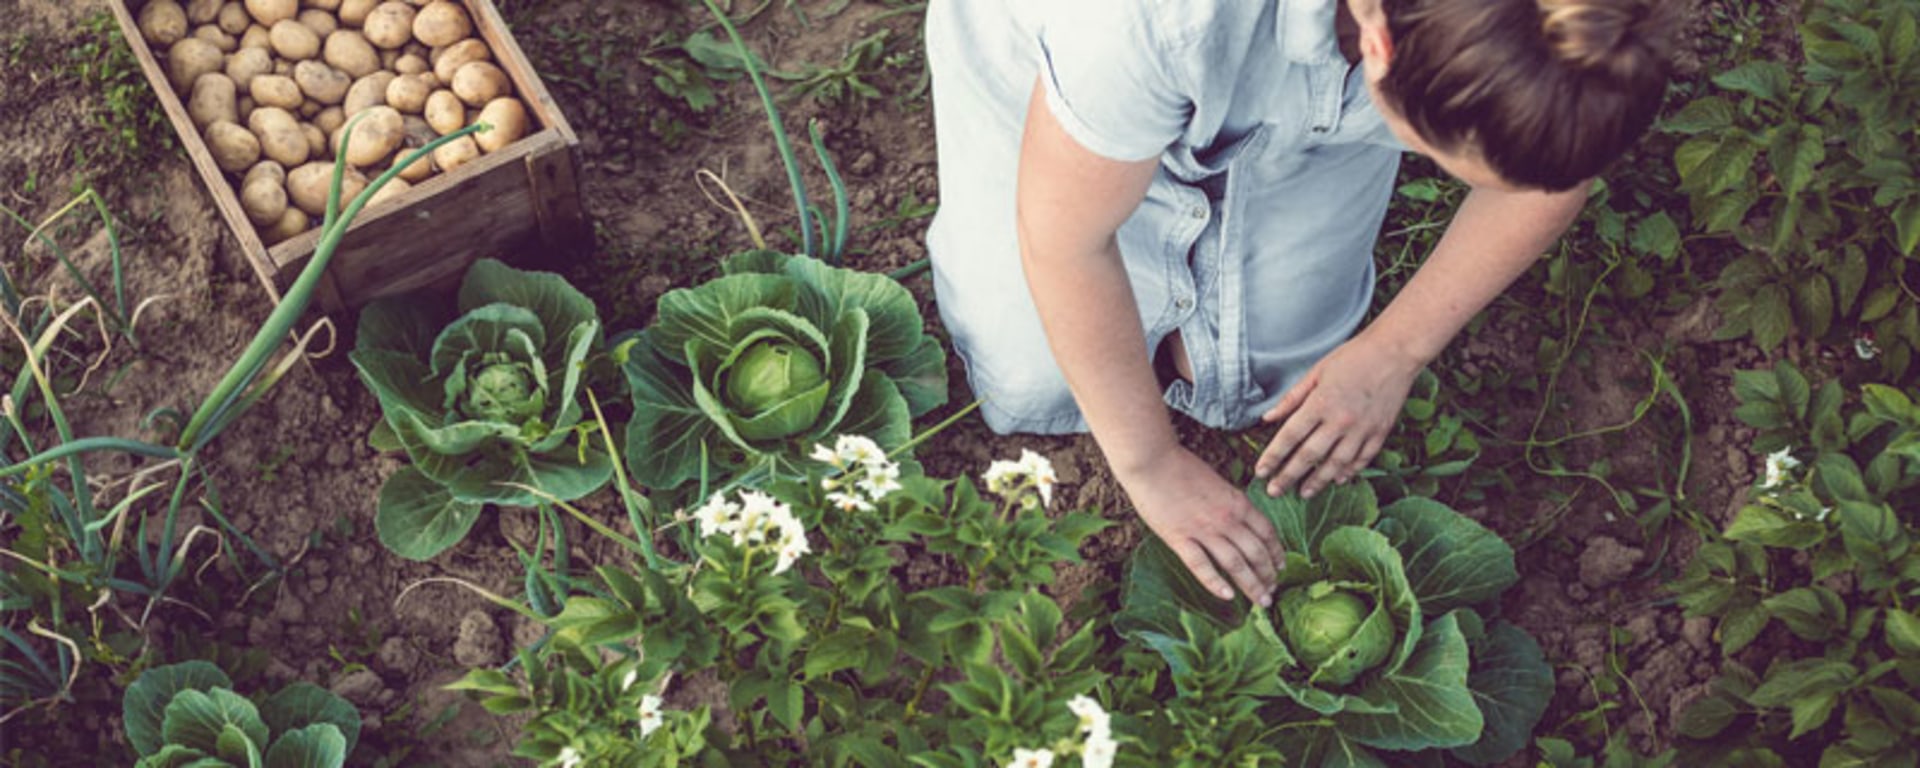 Par une journée ensoleillée, une femme récolte des légumes frais dans un jardin.